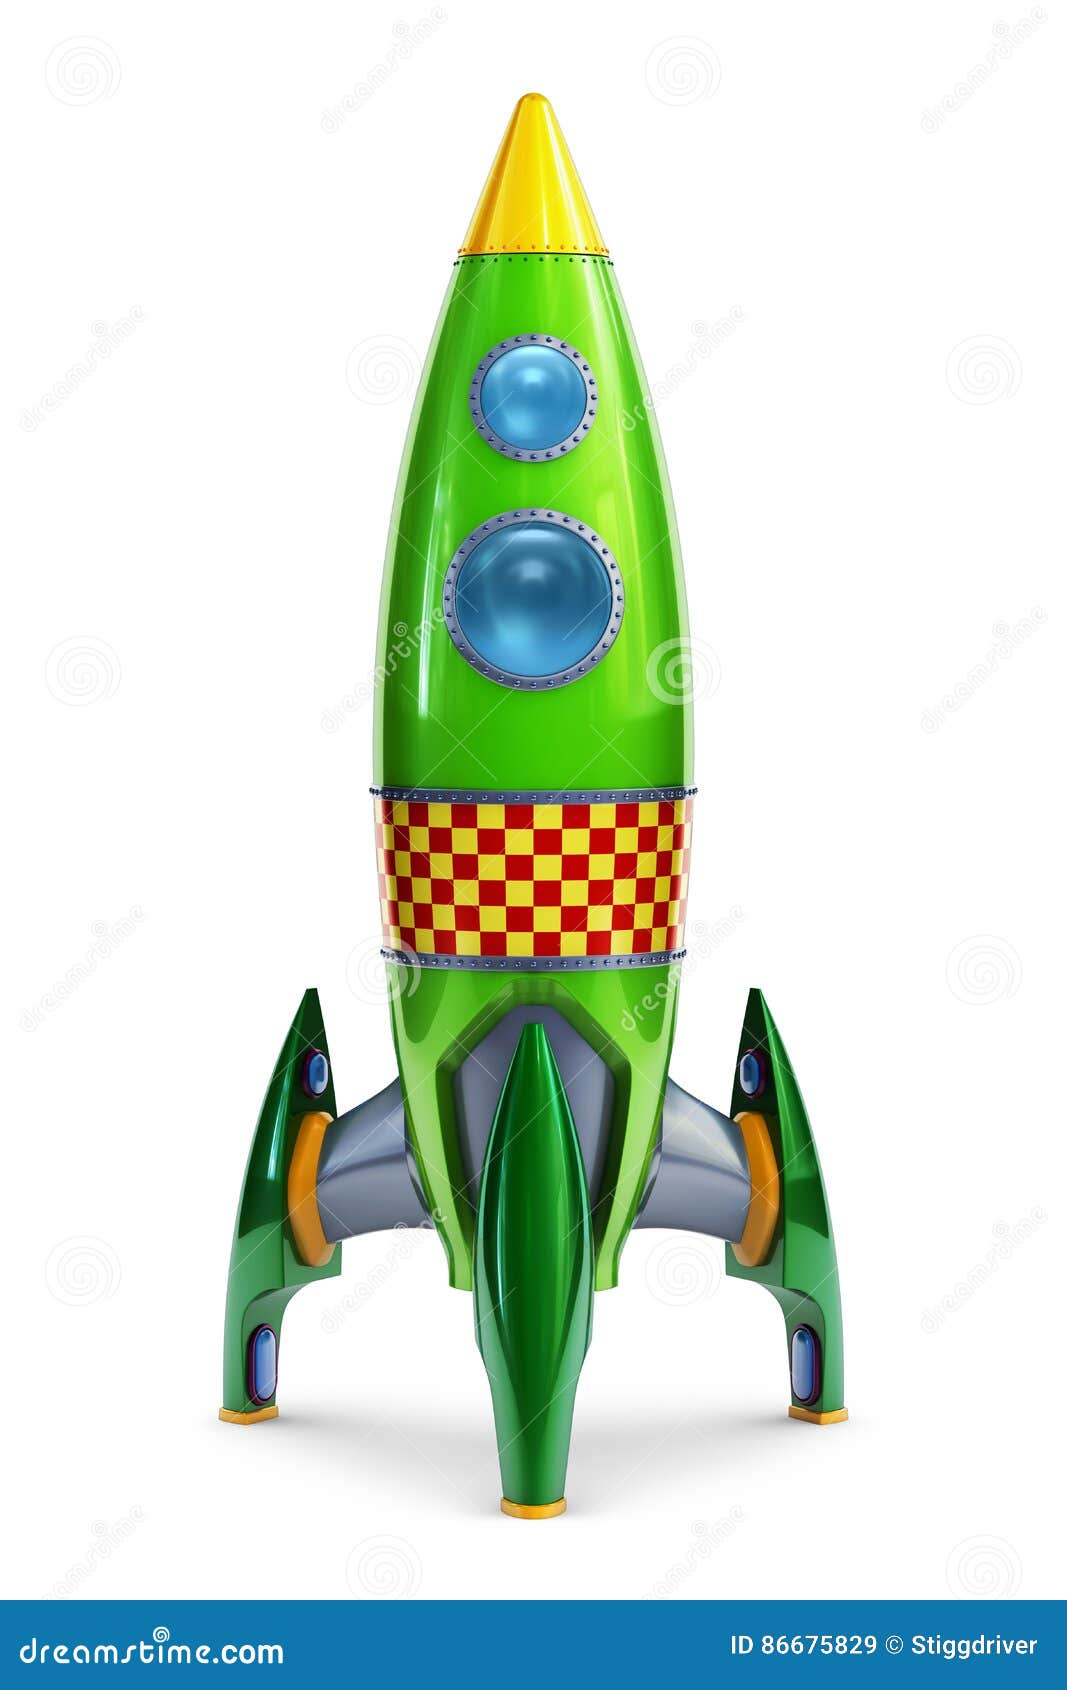 Ракета на зеленом фоне. Зеленая ракета. Ракета зеленого цвета. Ракета зеленого цвета для детей. Салатовая ракета.